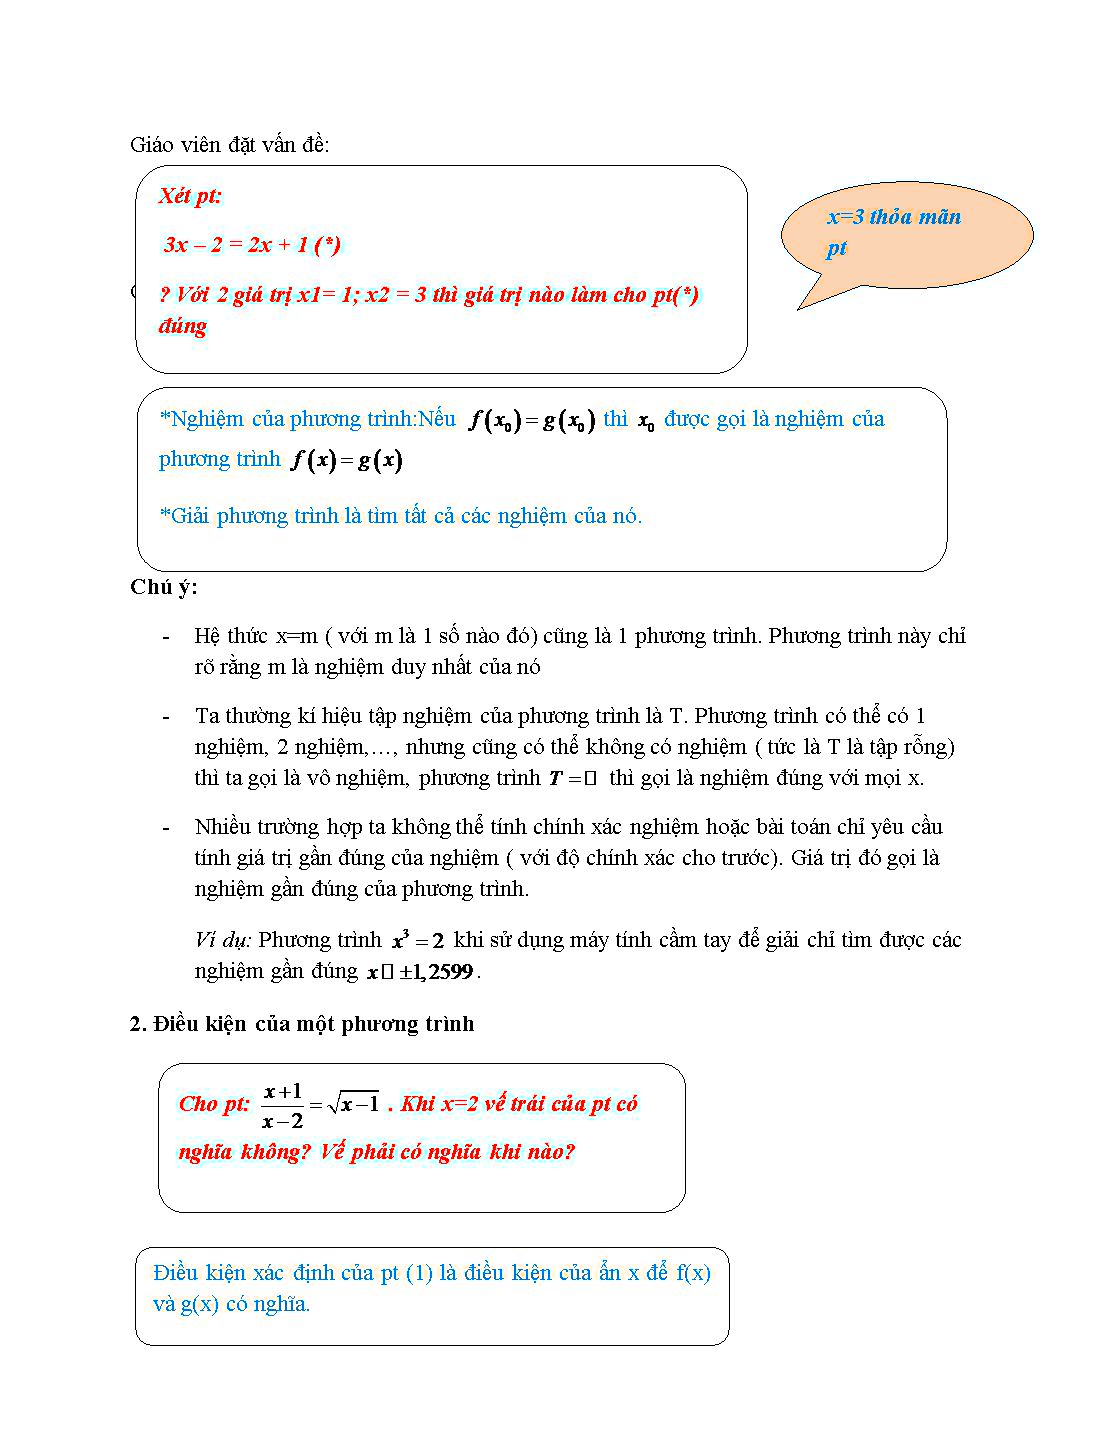 Giáo án môn Toán Lớp 10 (Theo phương pháp mới): Đại cương về phương trình trang 2